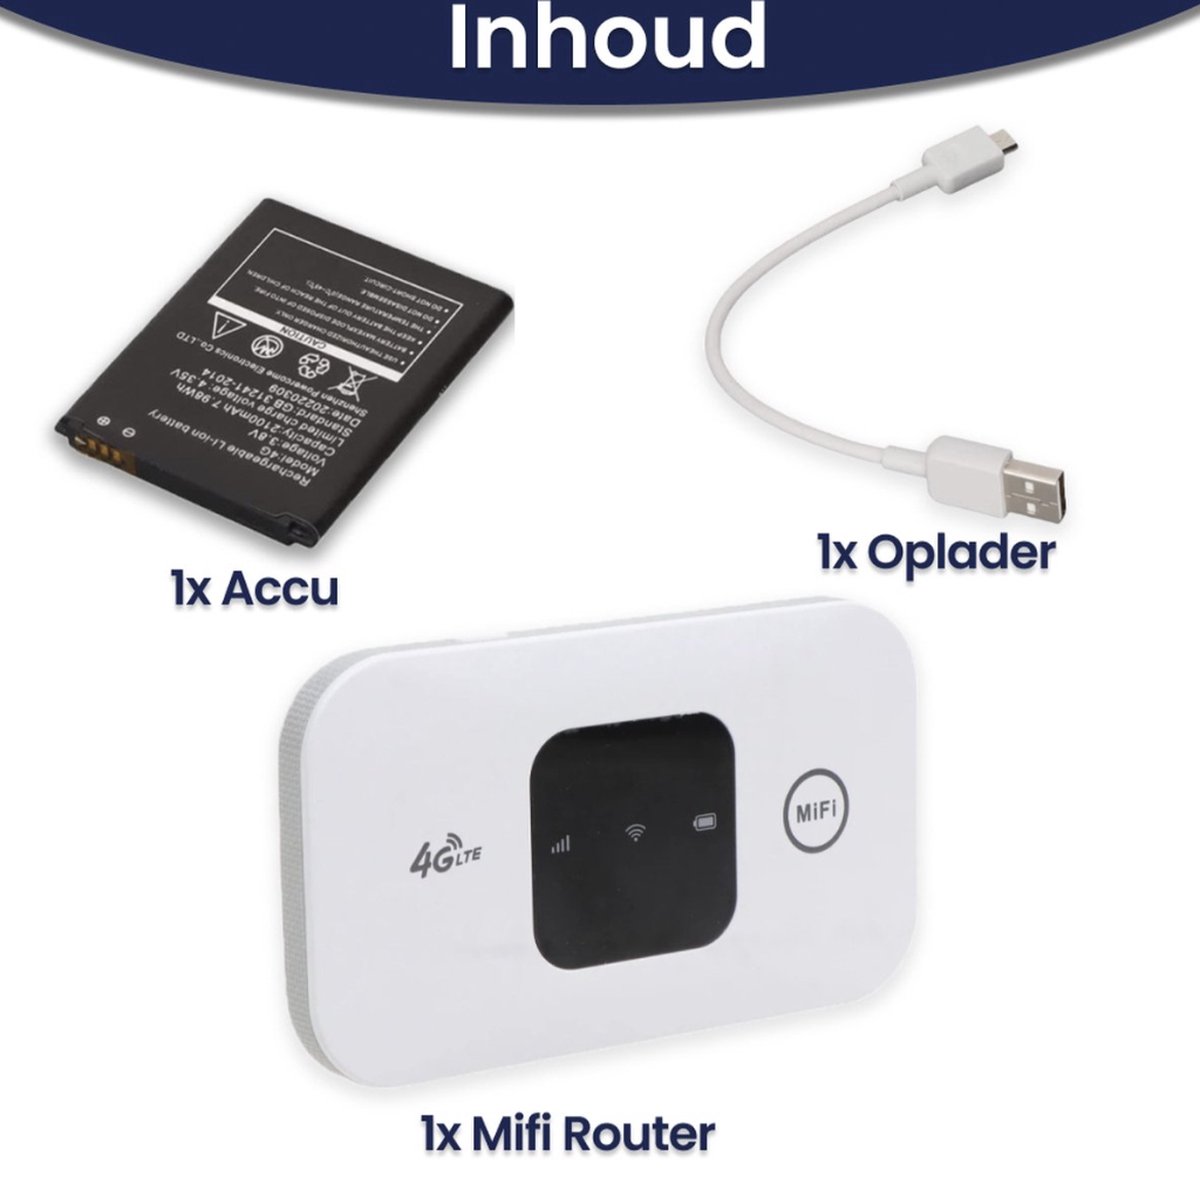 Routeur WiZone Mifi - Routeur 4G - Routeur Wifi portable